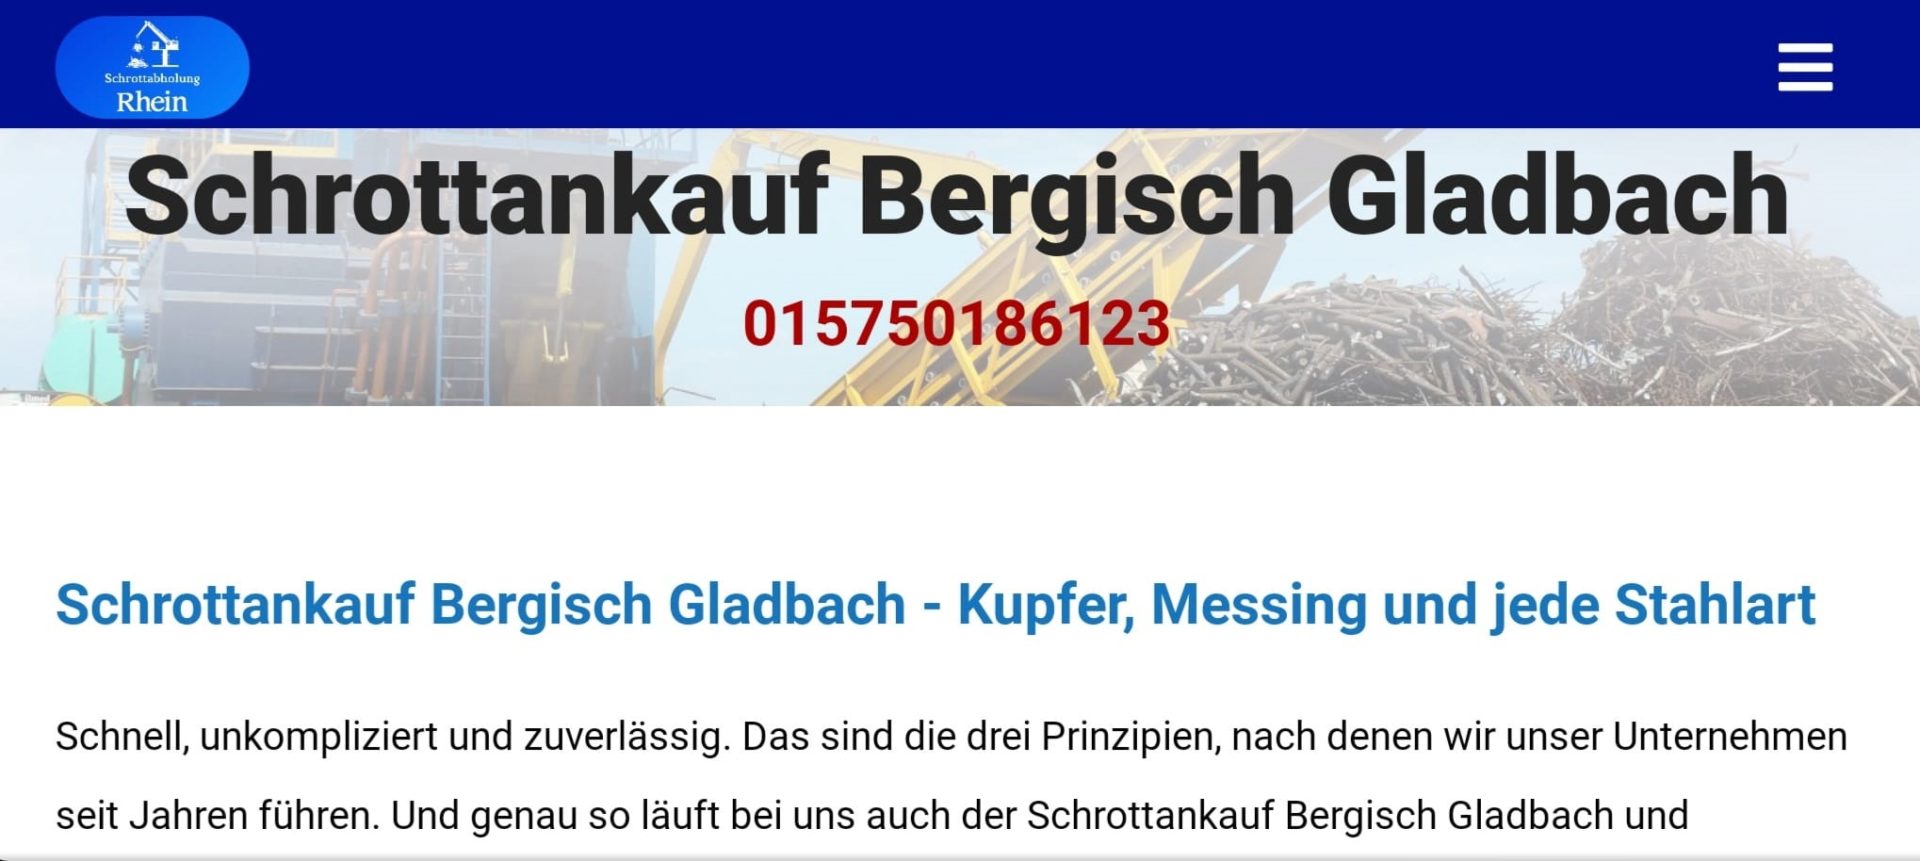 Schrottankauf Bergisch Gladbach-011c53be